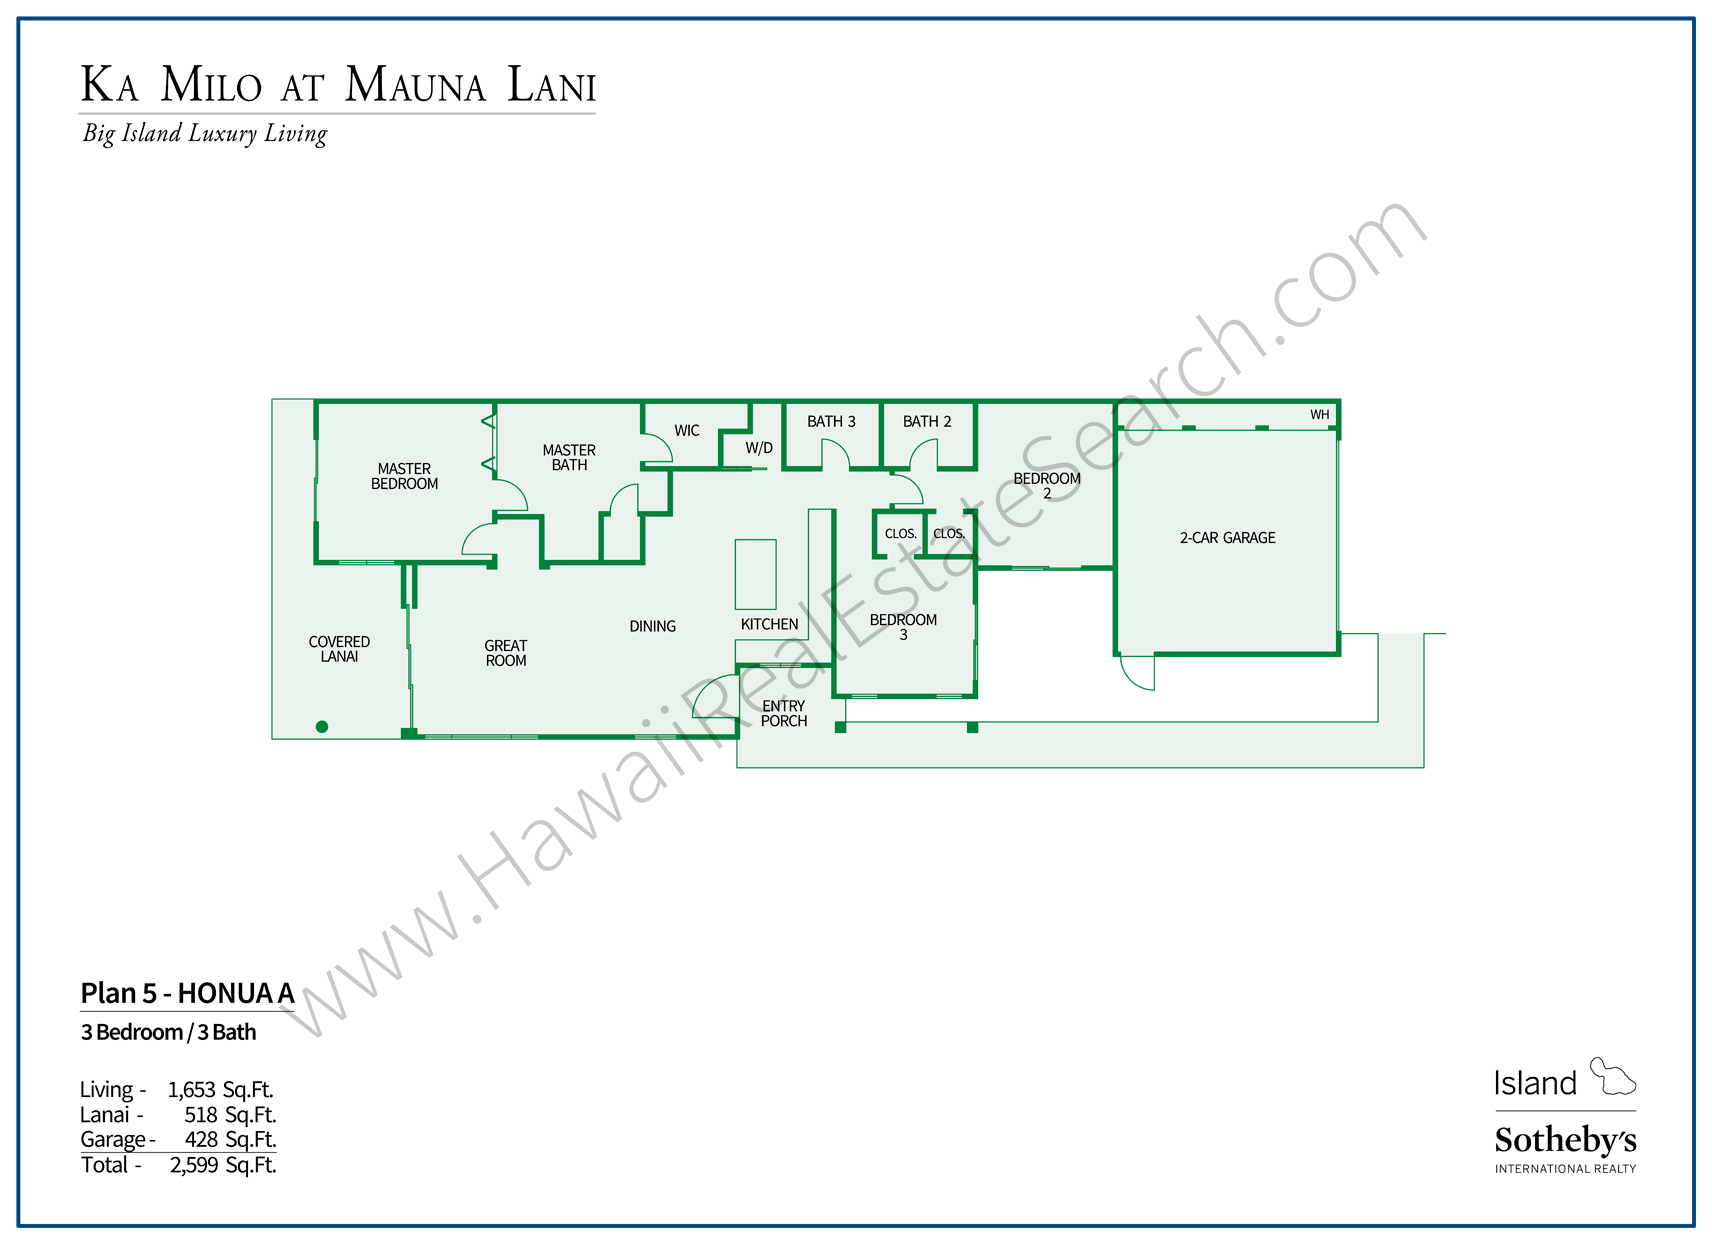 Mahina Floor Plan Ka Milo at Mauna Lani 